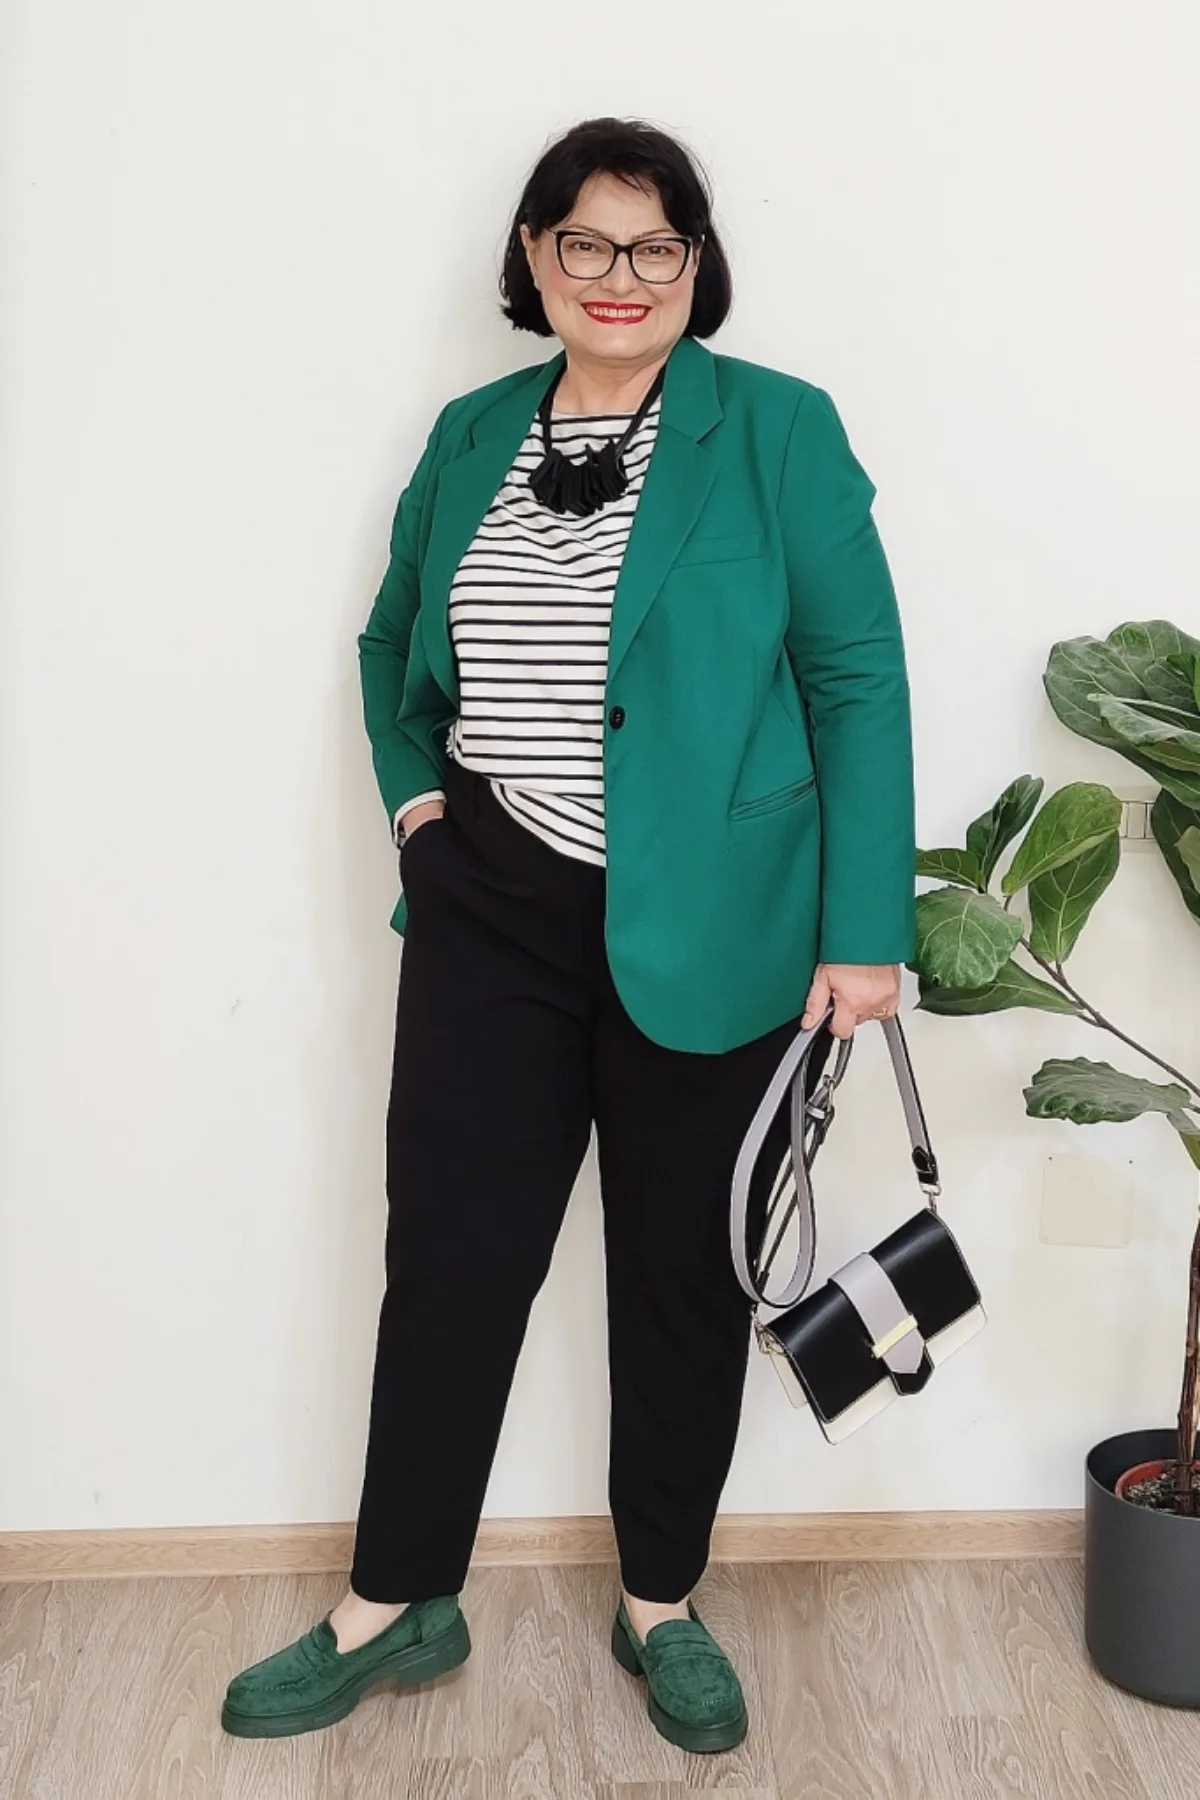 pantalon noir veste verte et matinière tenue pantalon femme ronde 50 ans